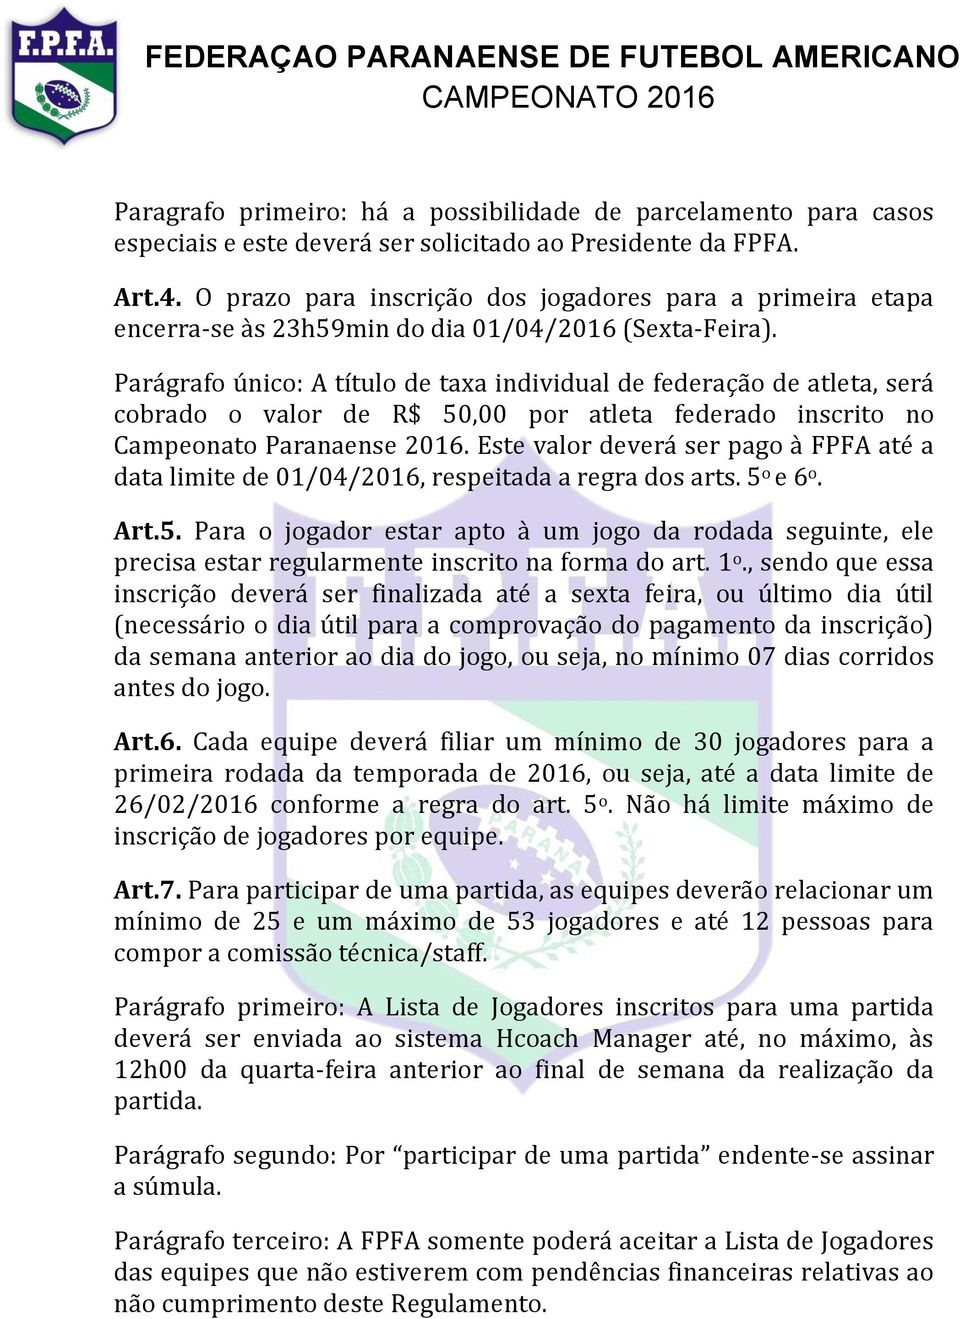 Parágrafo único: A título de taxa individual de federação de atleta, será cobrado o valor de R$ 50,00 por atleta federado inscrito no Campeonato Paranaense 2016.